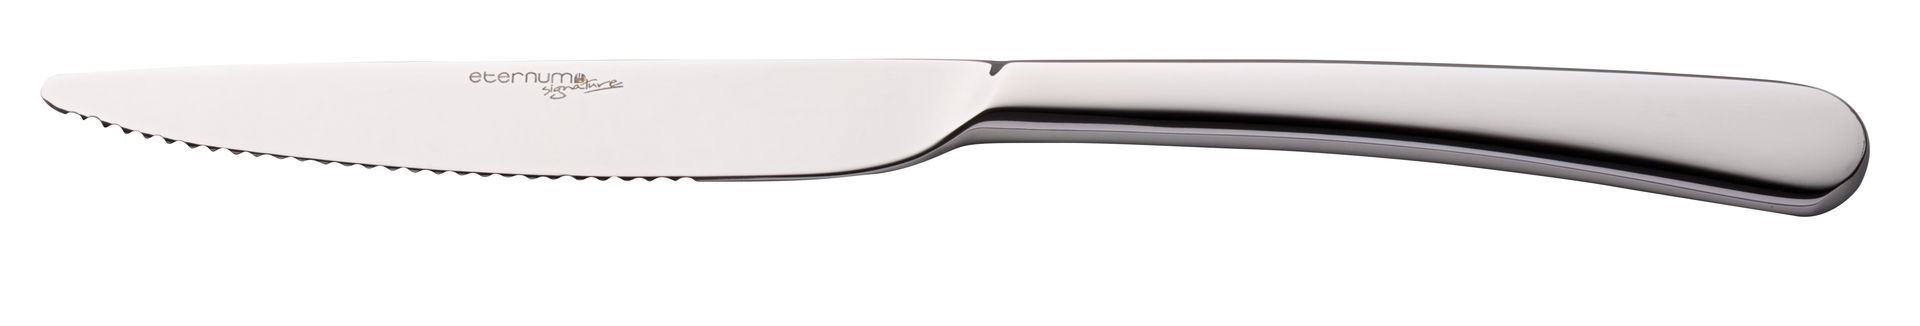 Ascot Steak Knife - F34014-000000-B01012 (Pack of 12)